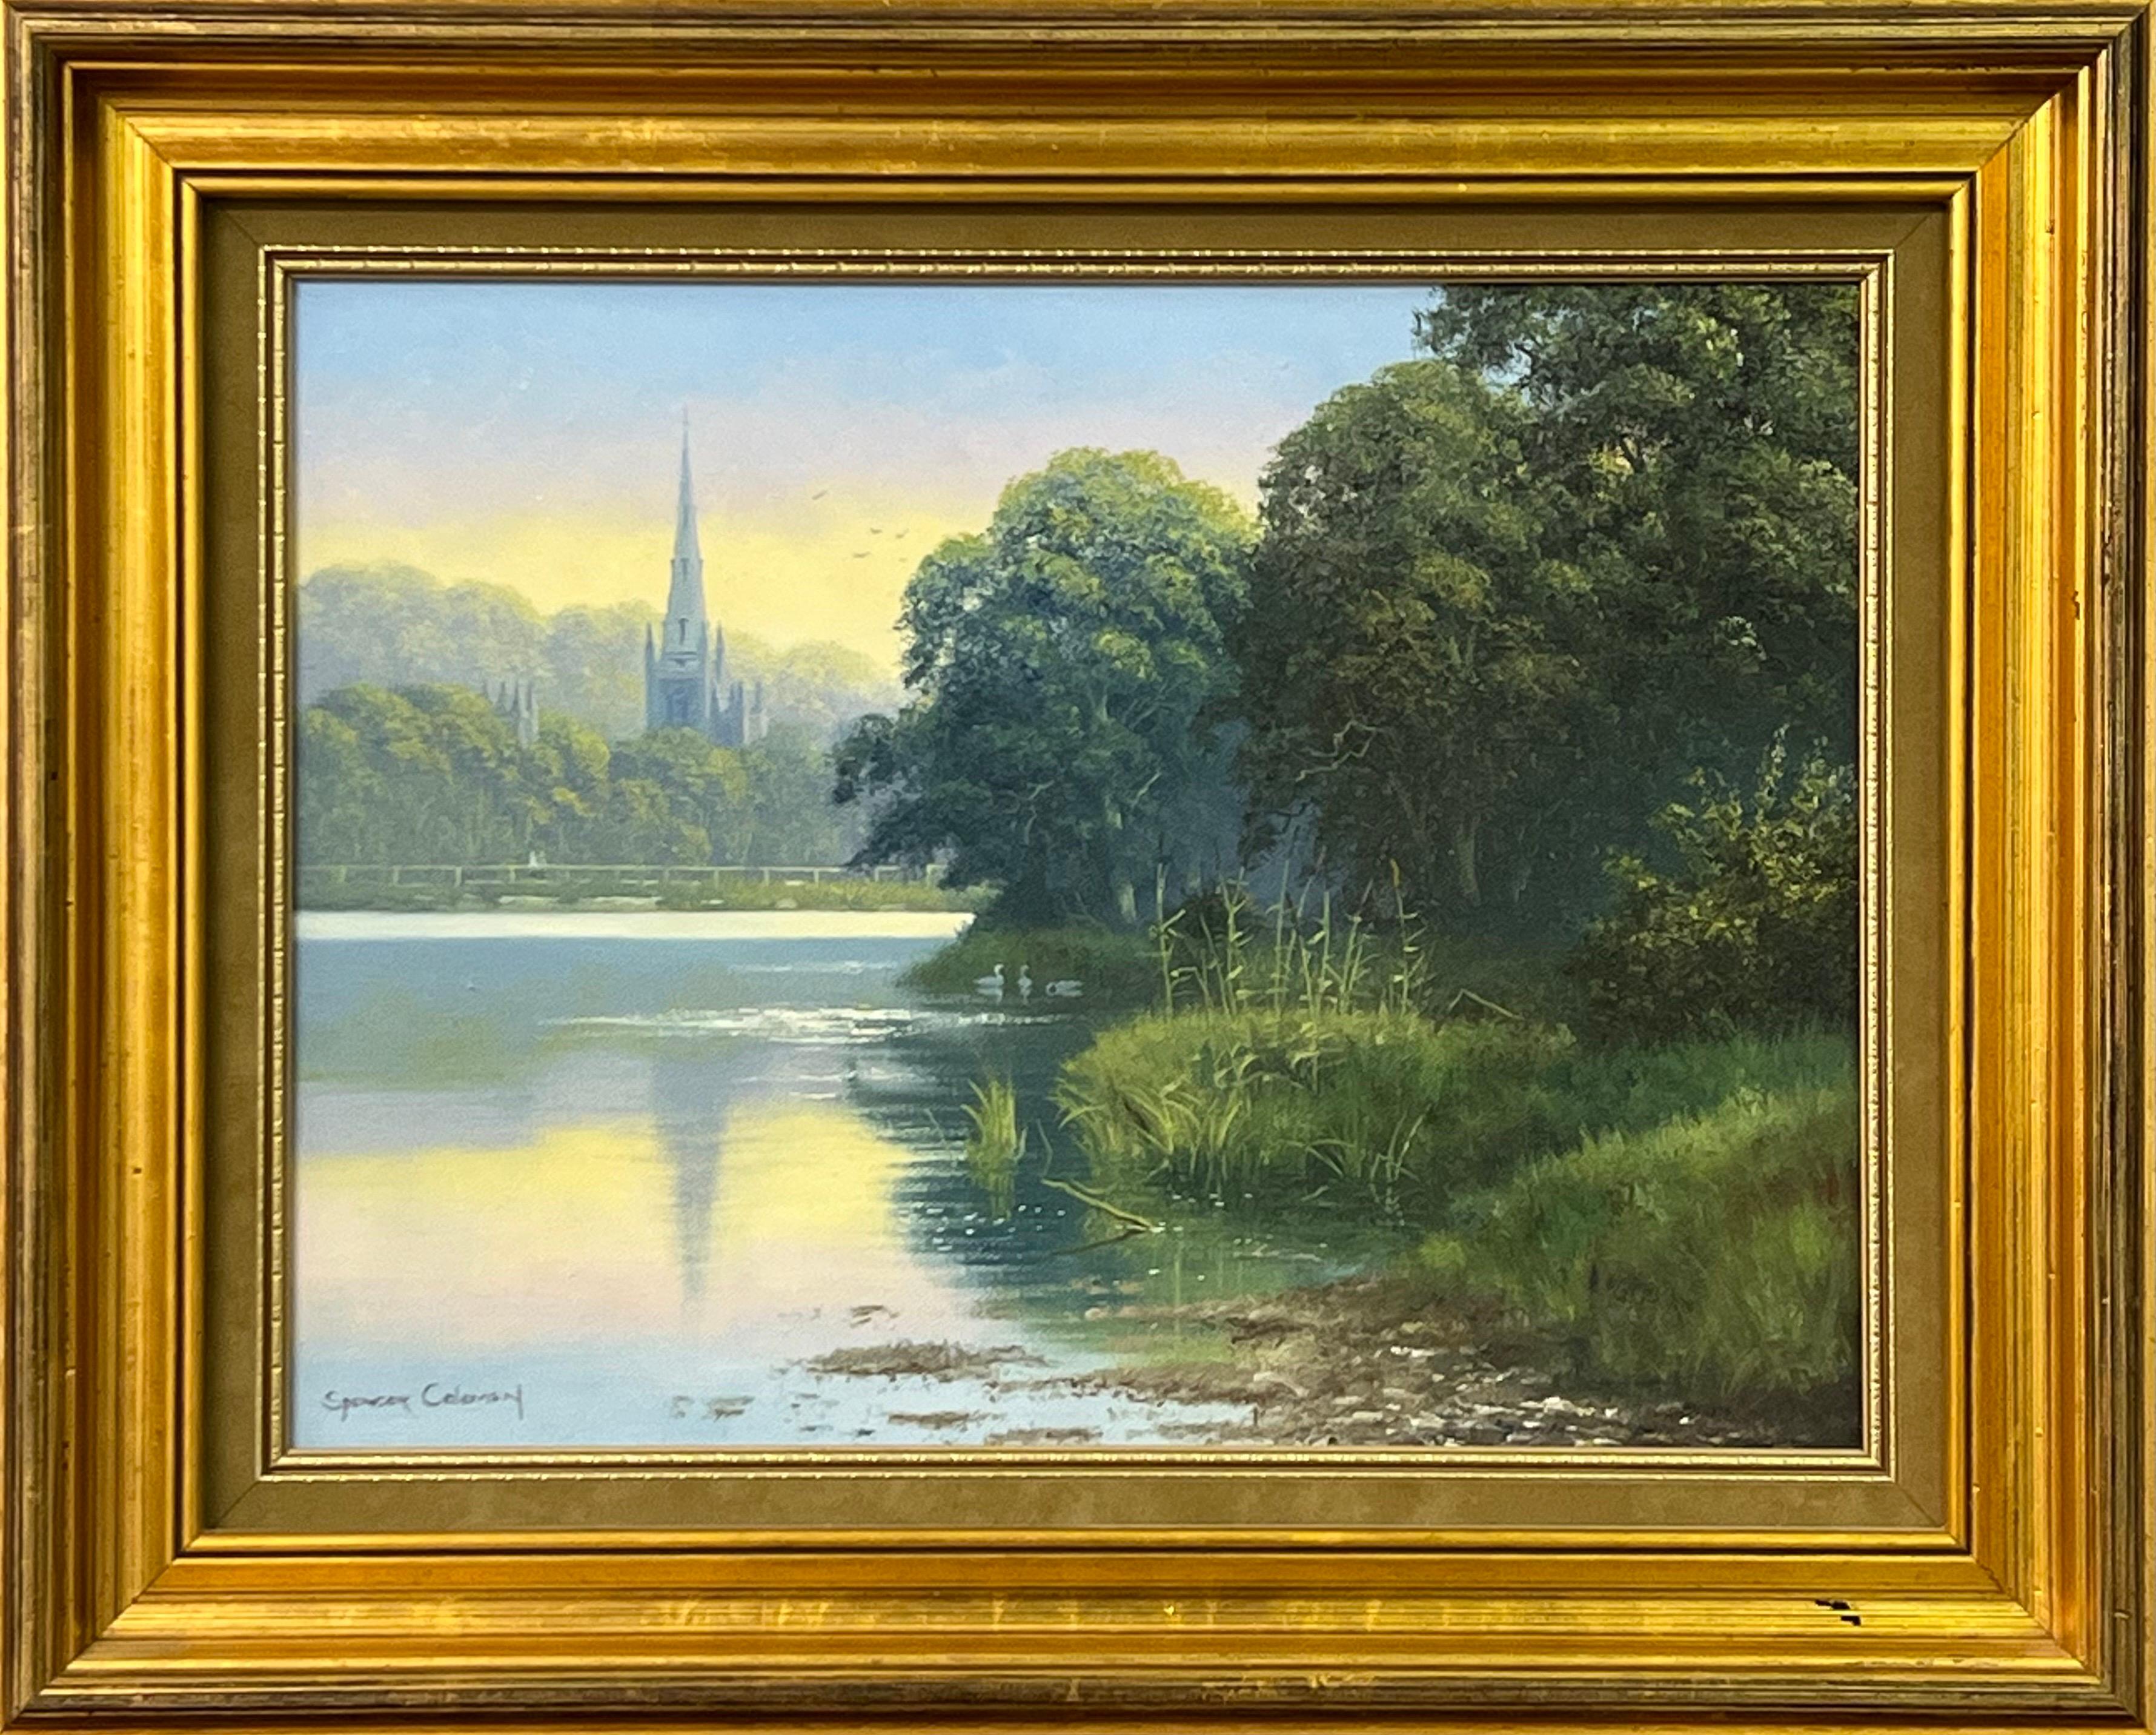 Spencer Coleman Animal Painting – Gemälde einer ländlichen irischen Landschaft mit Swan Lake & Church's Reflections